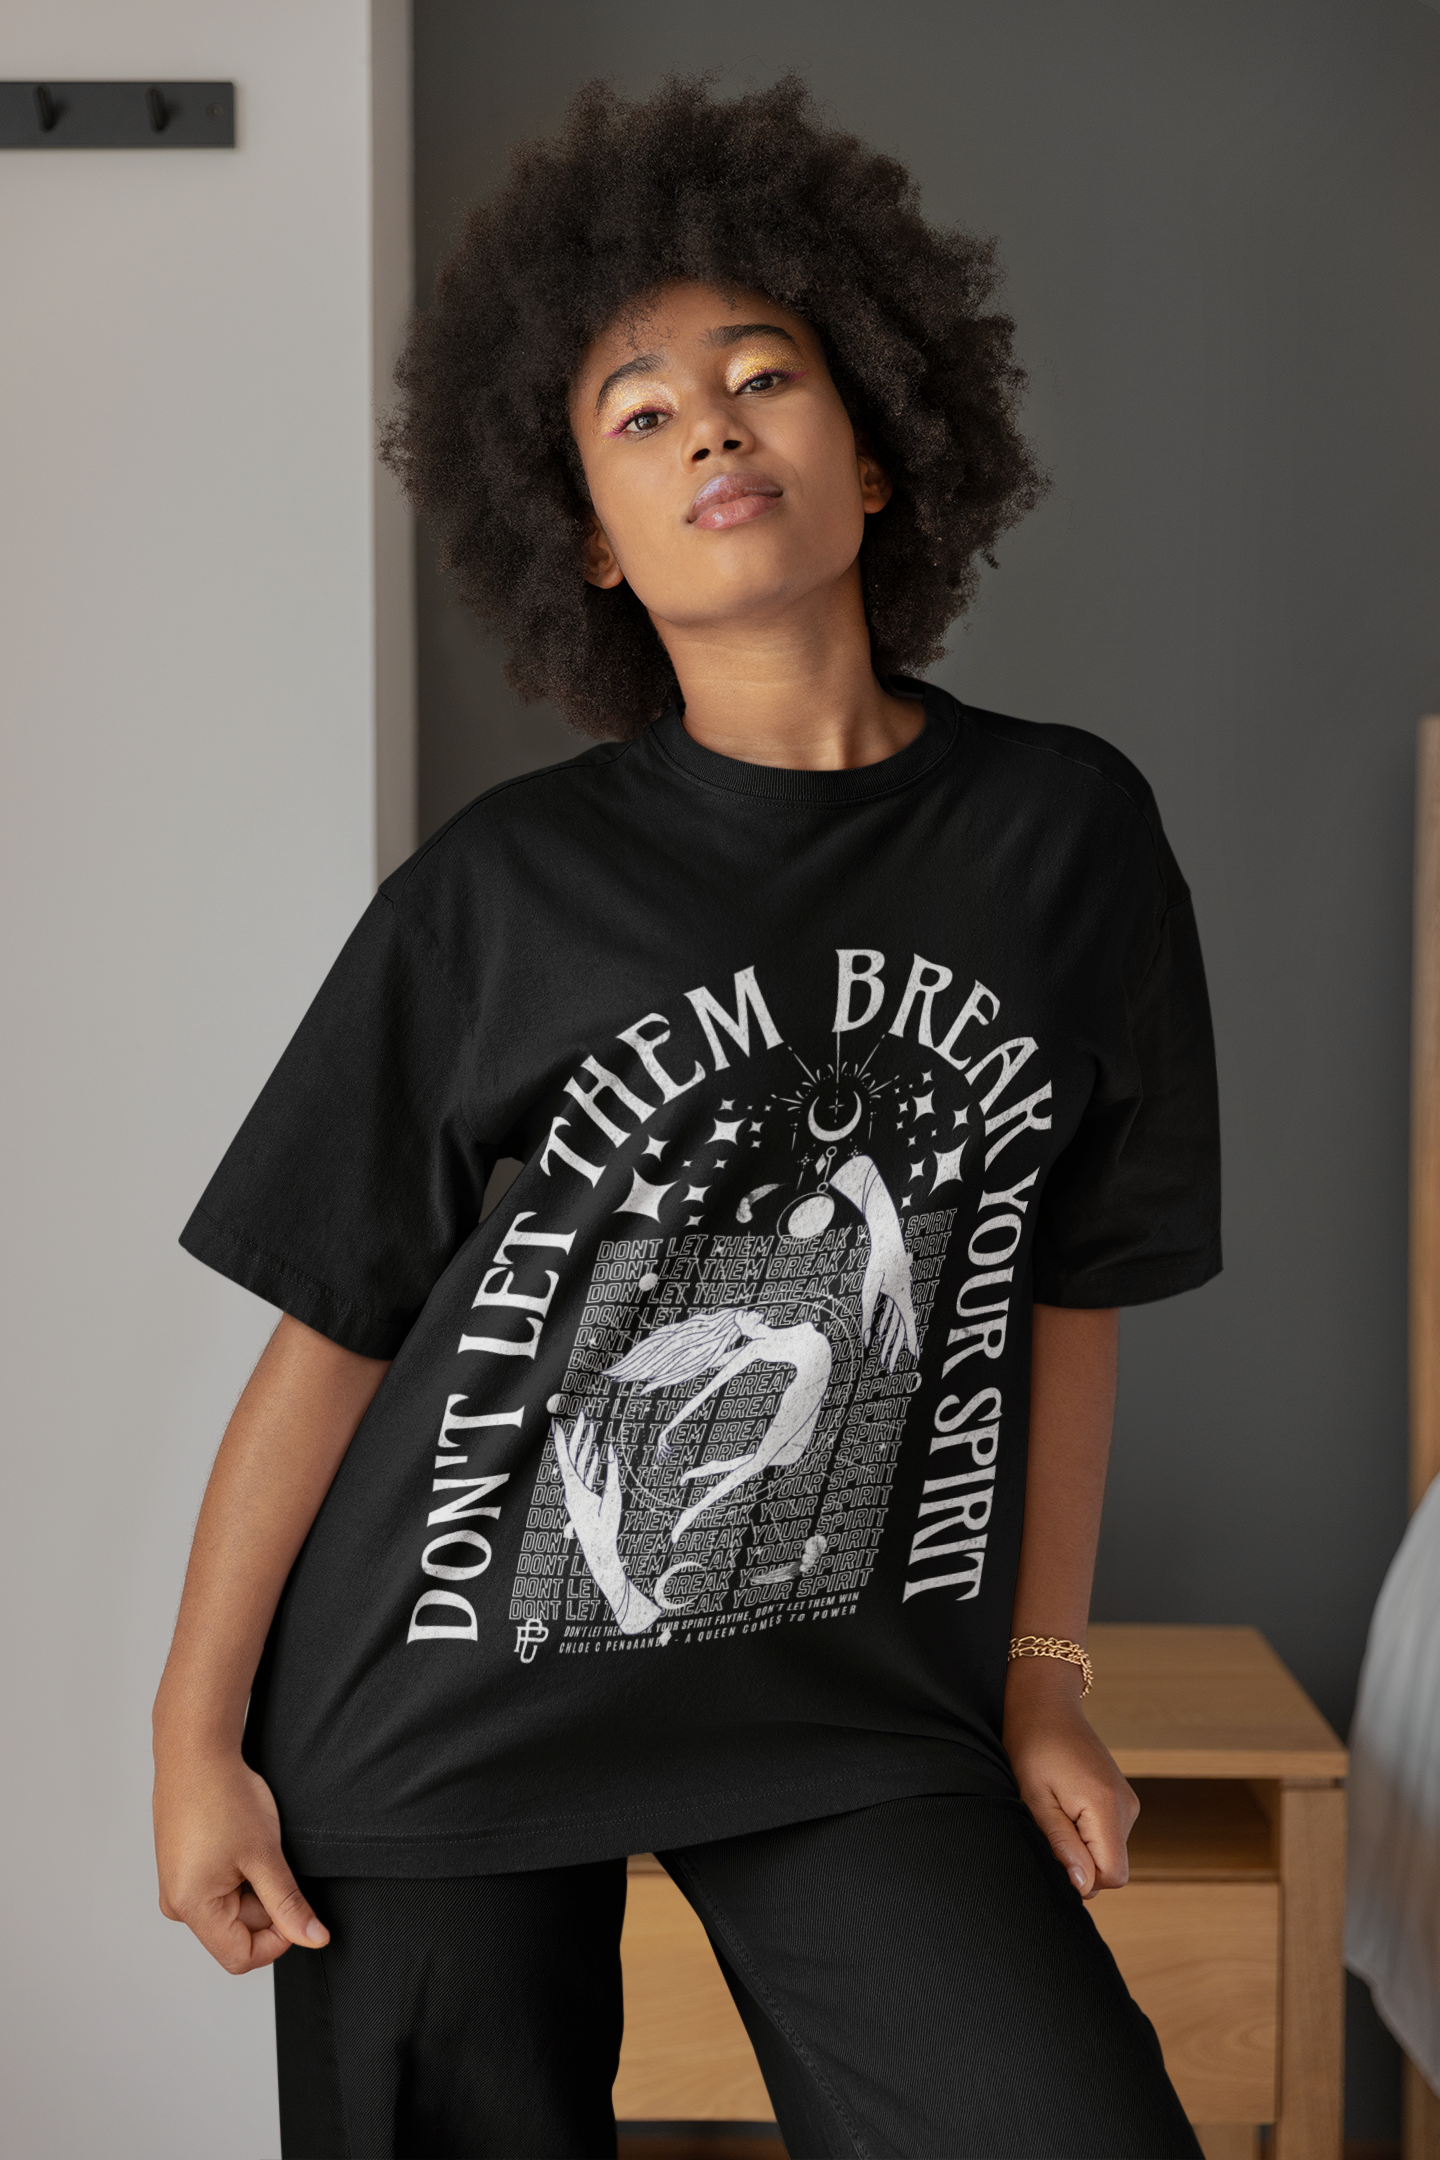 Don't Let Them Break Your Spirit - Chloe C. Penaranda - Officially Licensed - T-shirt/tee